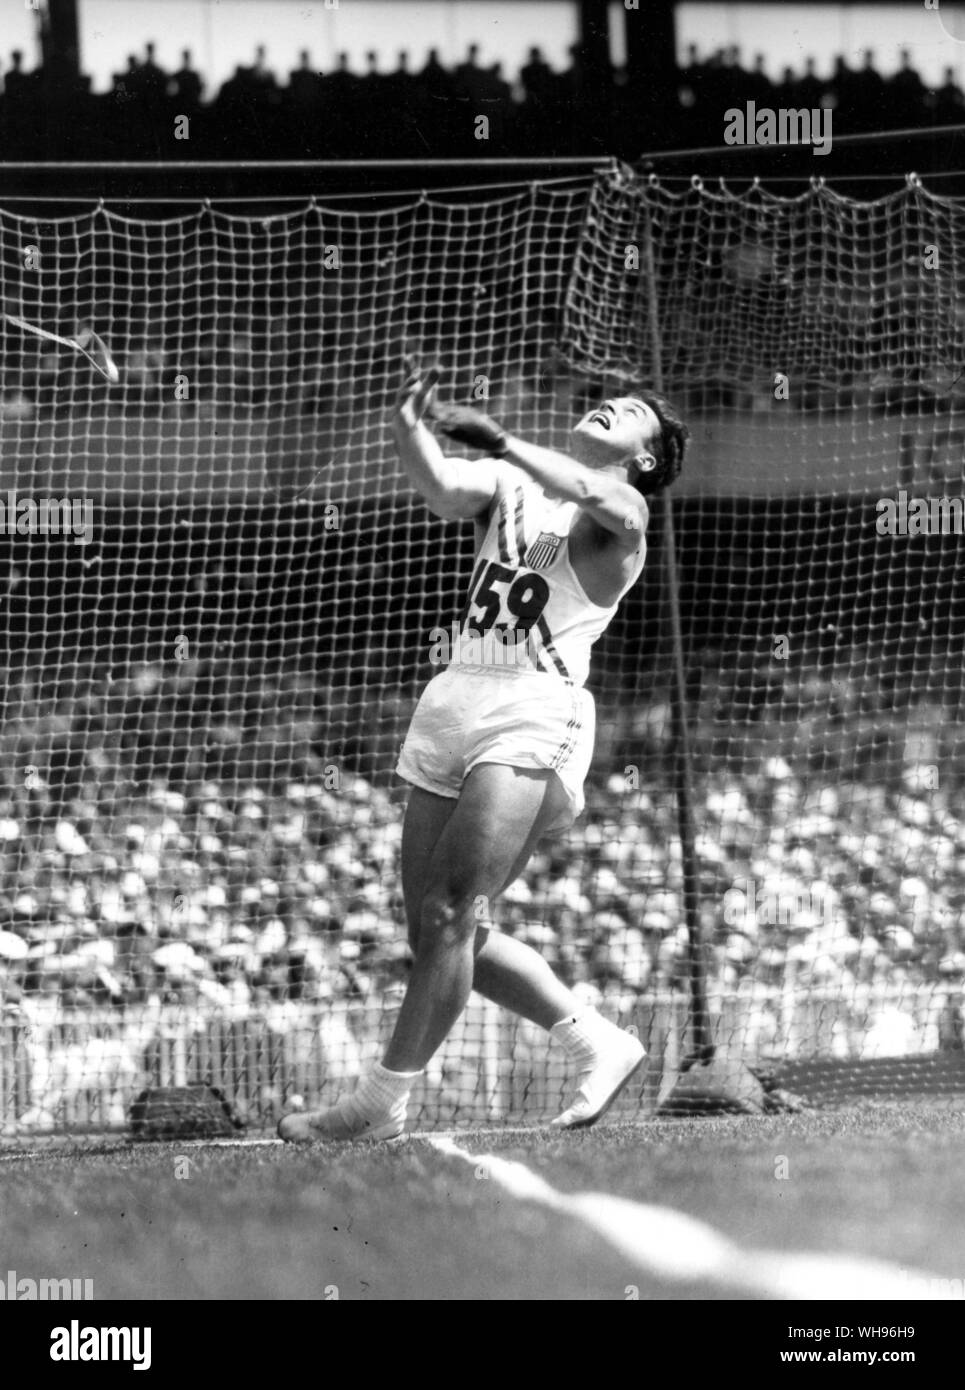 Aus., Melbourne, Olimpiadas 1956: Harold Connolly, de 25 años de EE.UU., durante la final del evento de lanzamiento de martillo, que ganó. Foto de stock